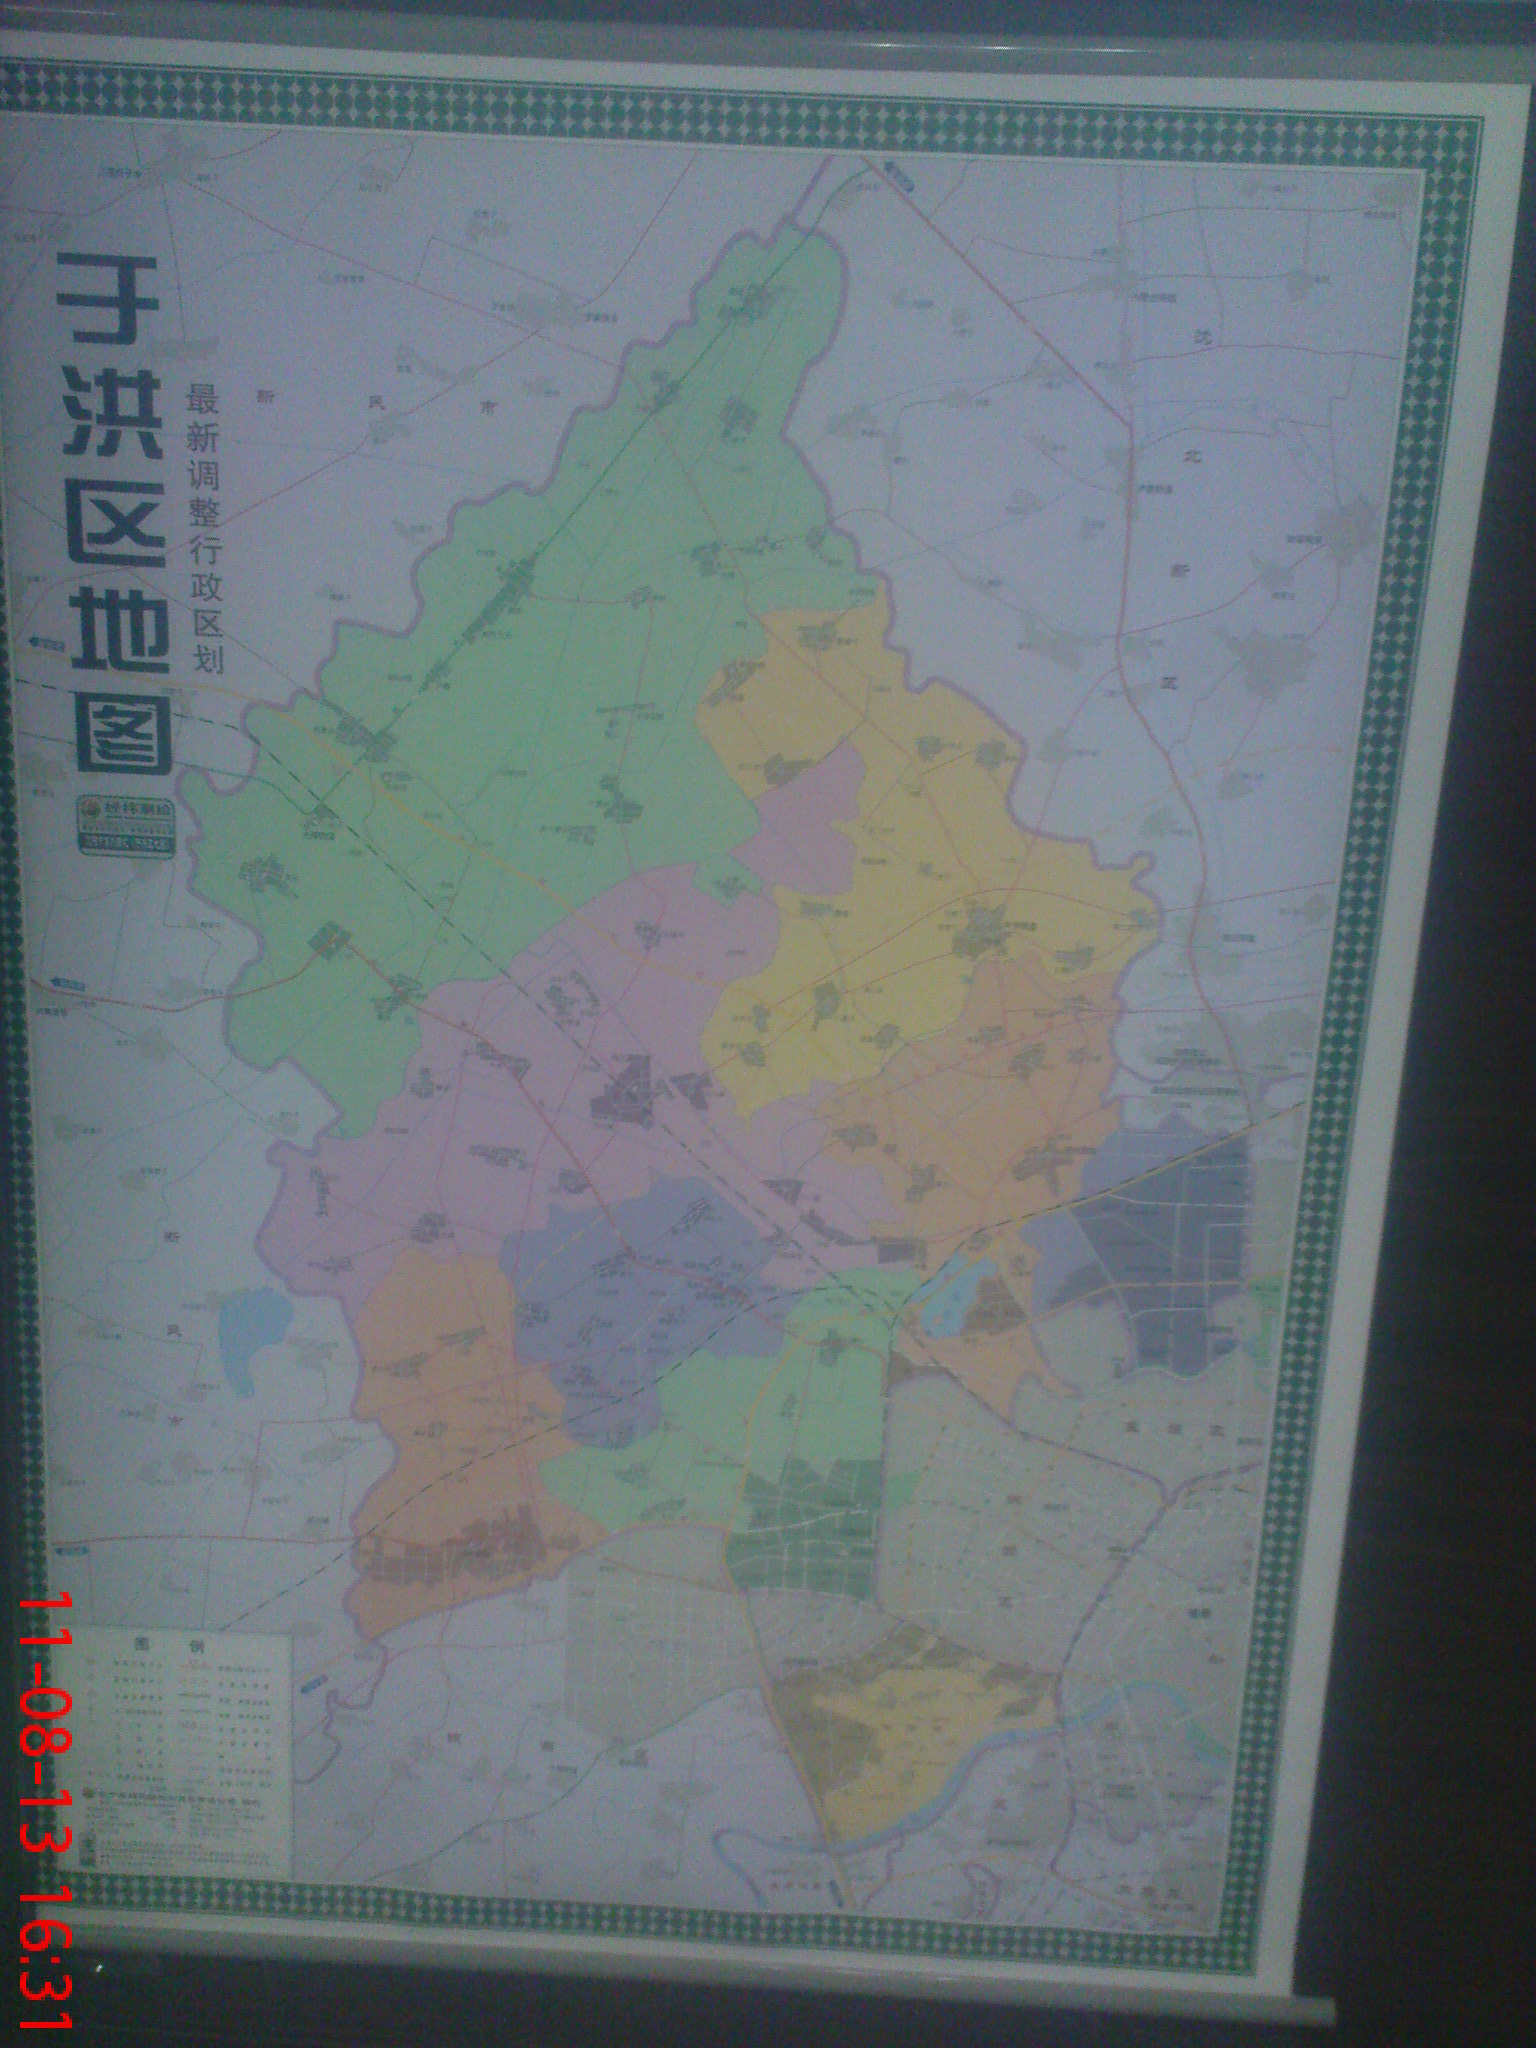 沈阳市各区最新调整行政区划地图(不给力的手机照的,很不清晰,凑合看图片